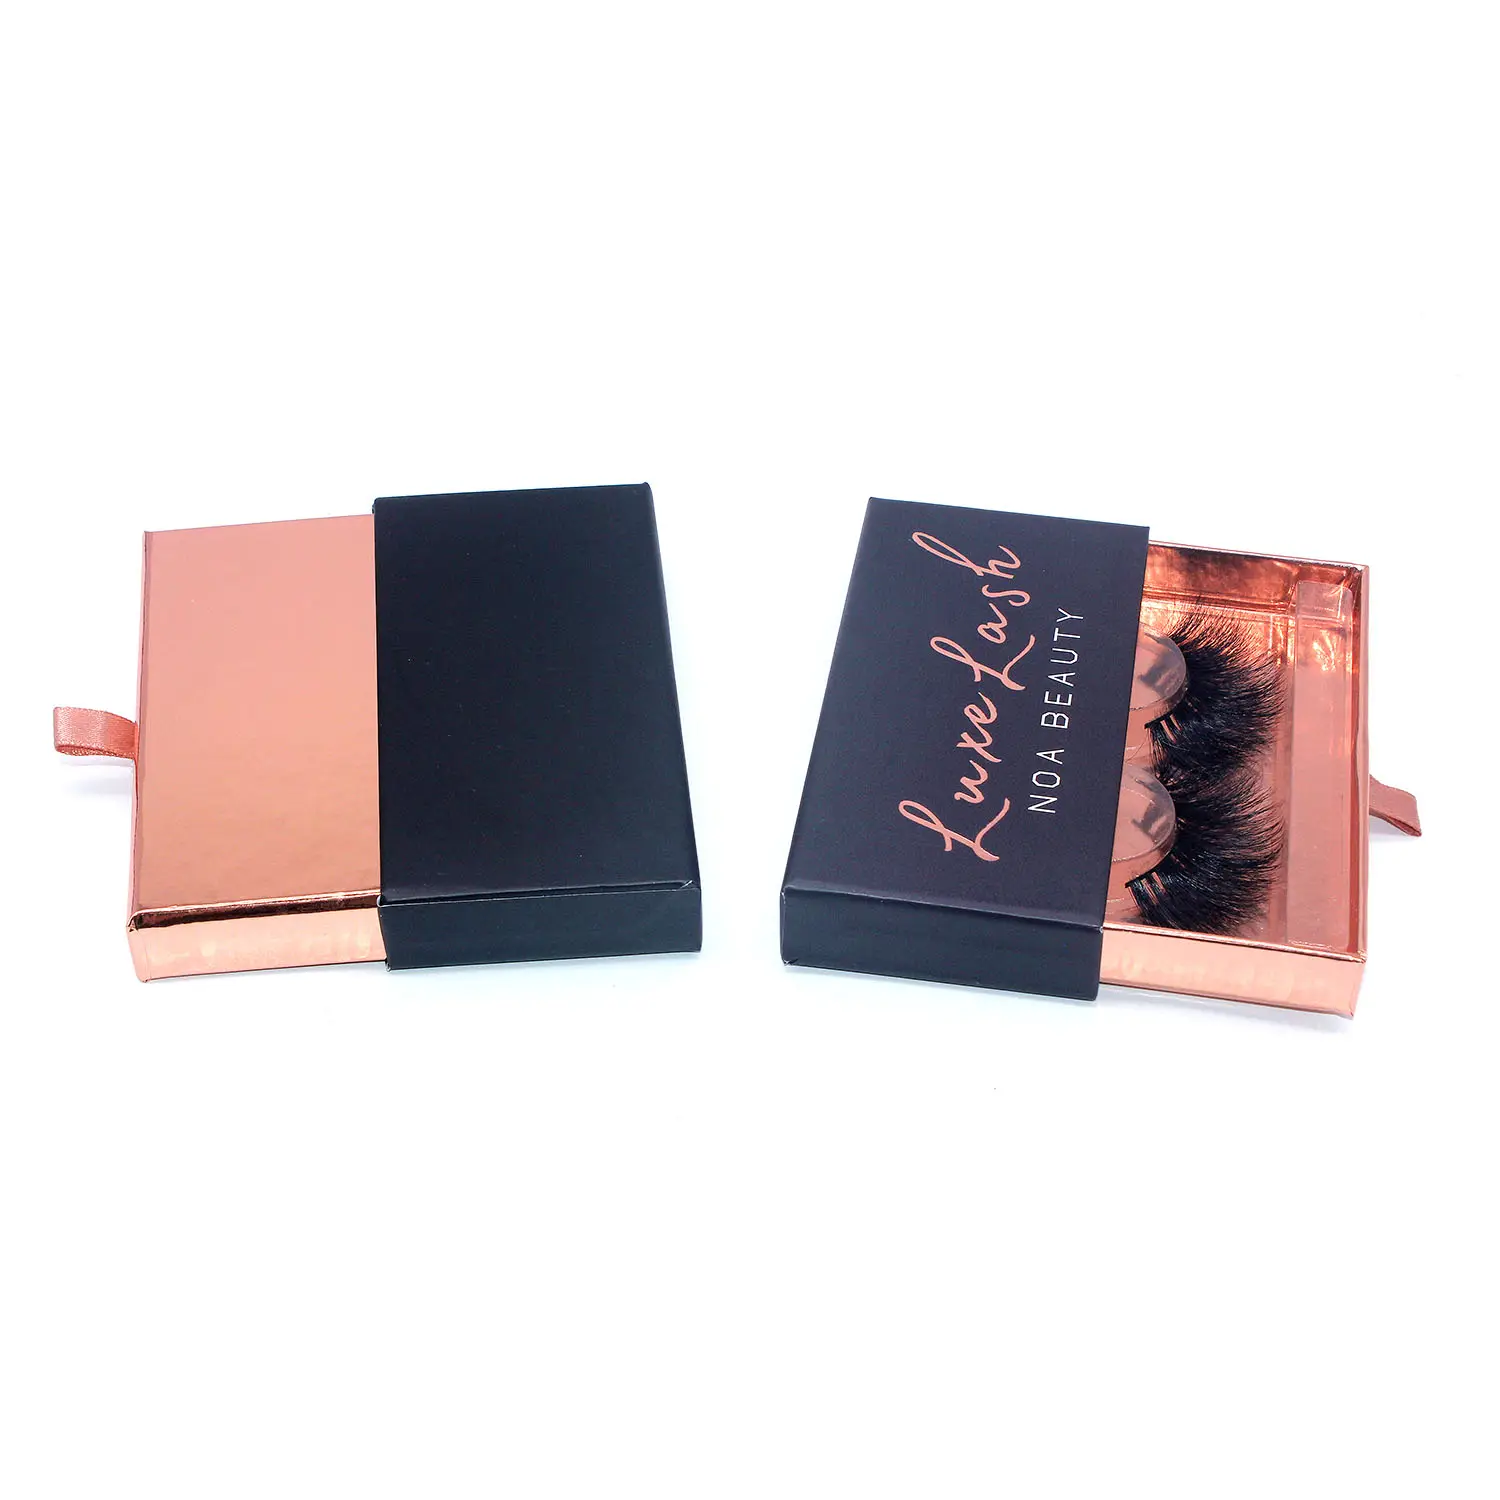 Pestañas de visón B334, impresión en caliente, cuadrado, negro mate, caja personalizada, brillo, papel vacío, caja de embalaje